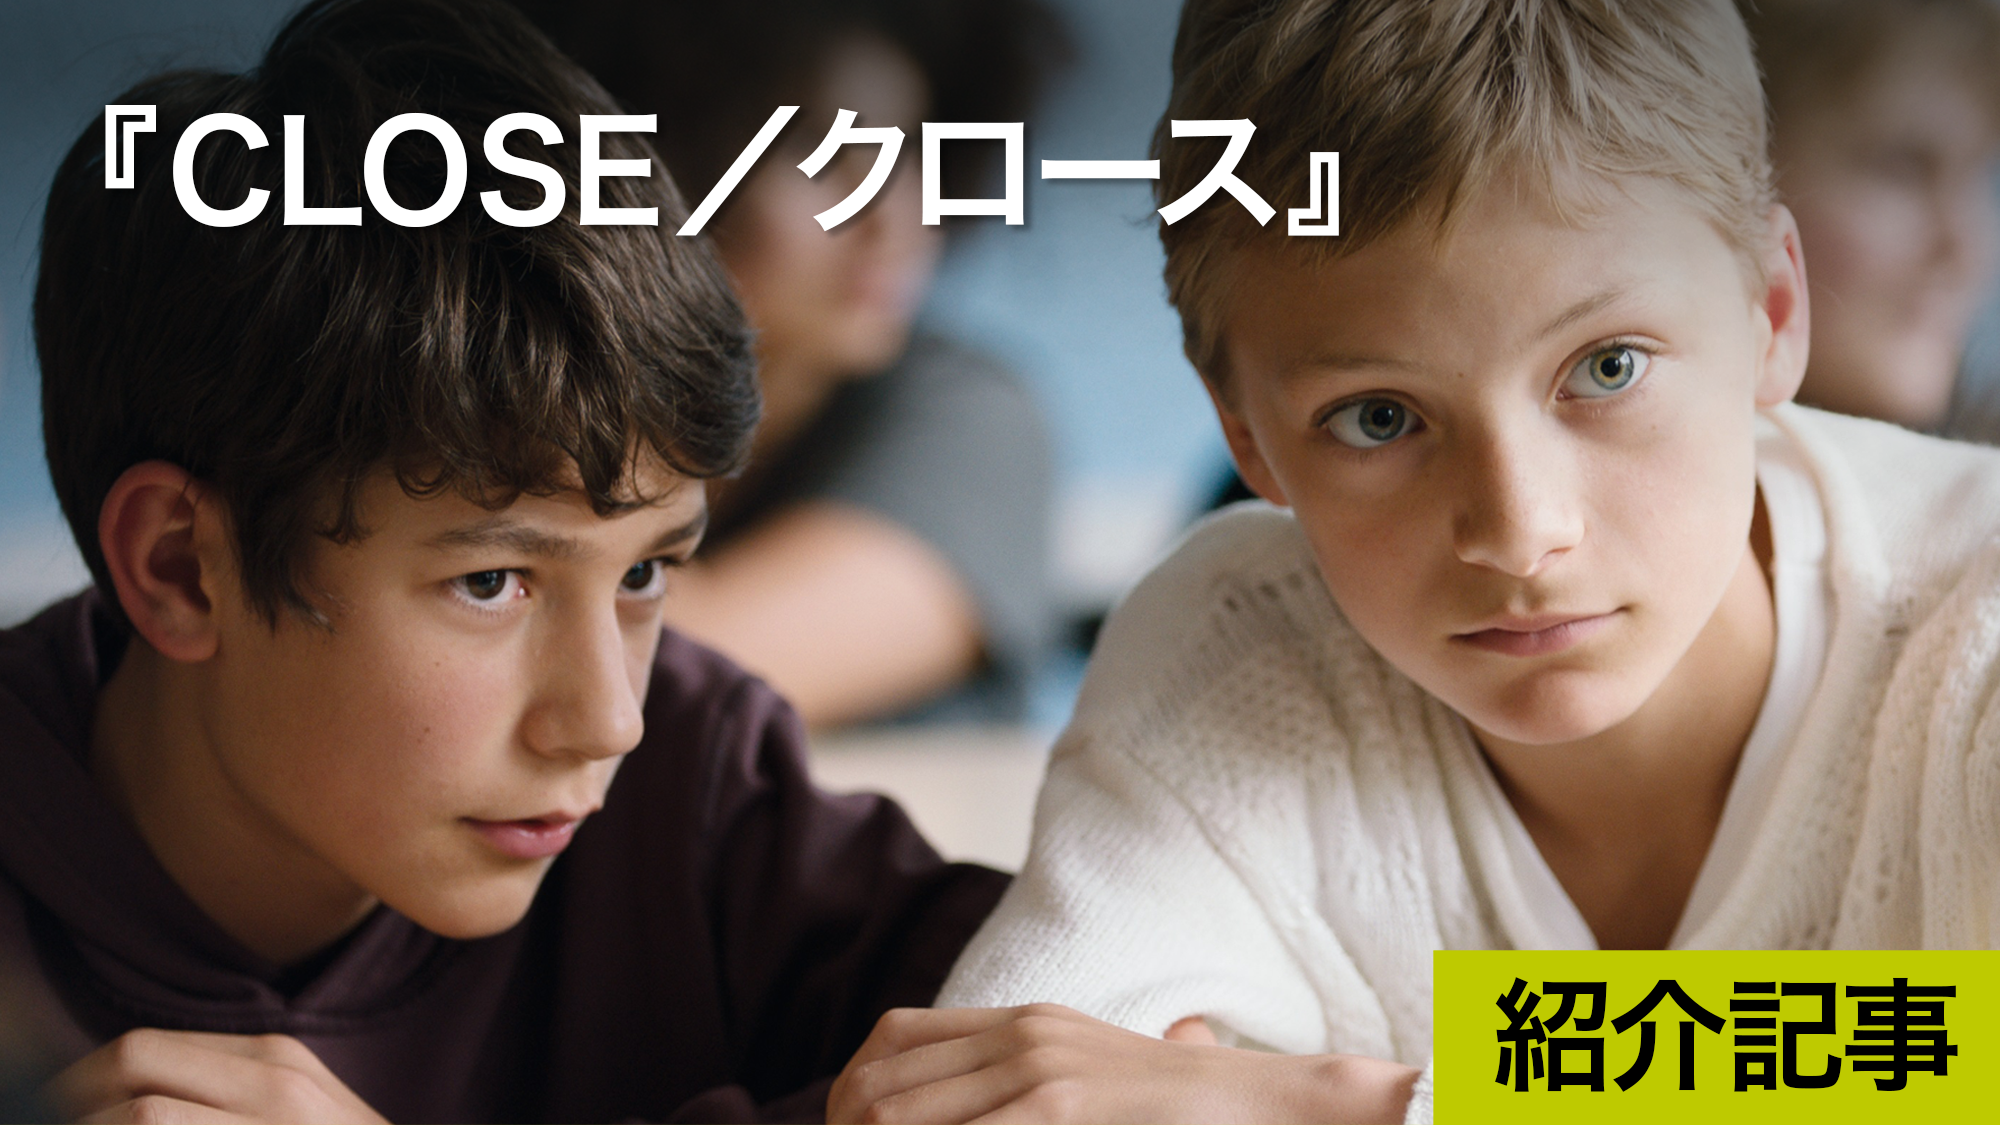 『CLOSE／クロース』13歳の2人の少年に起こる悲劇的なできごと、その悲しみと再生、思春期への旅の始まりを繊細に描いた物語